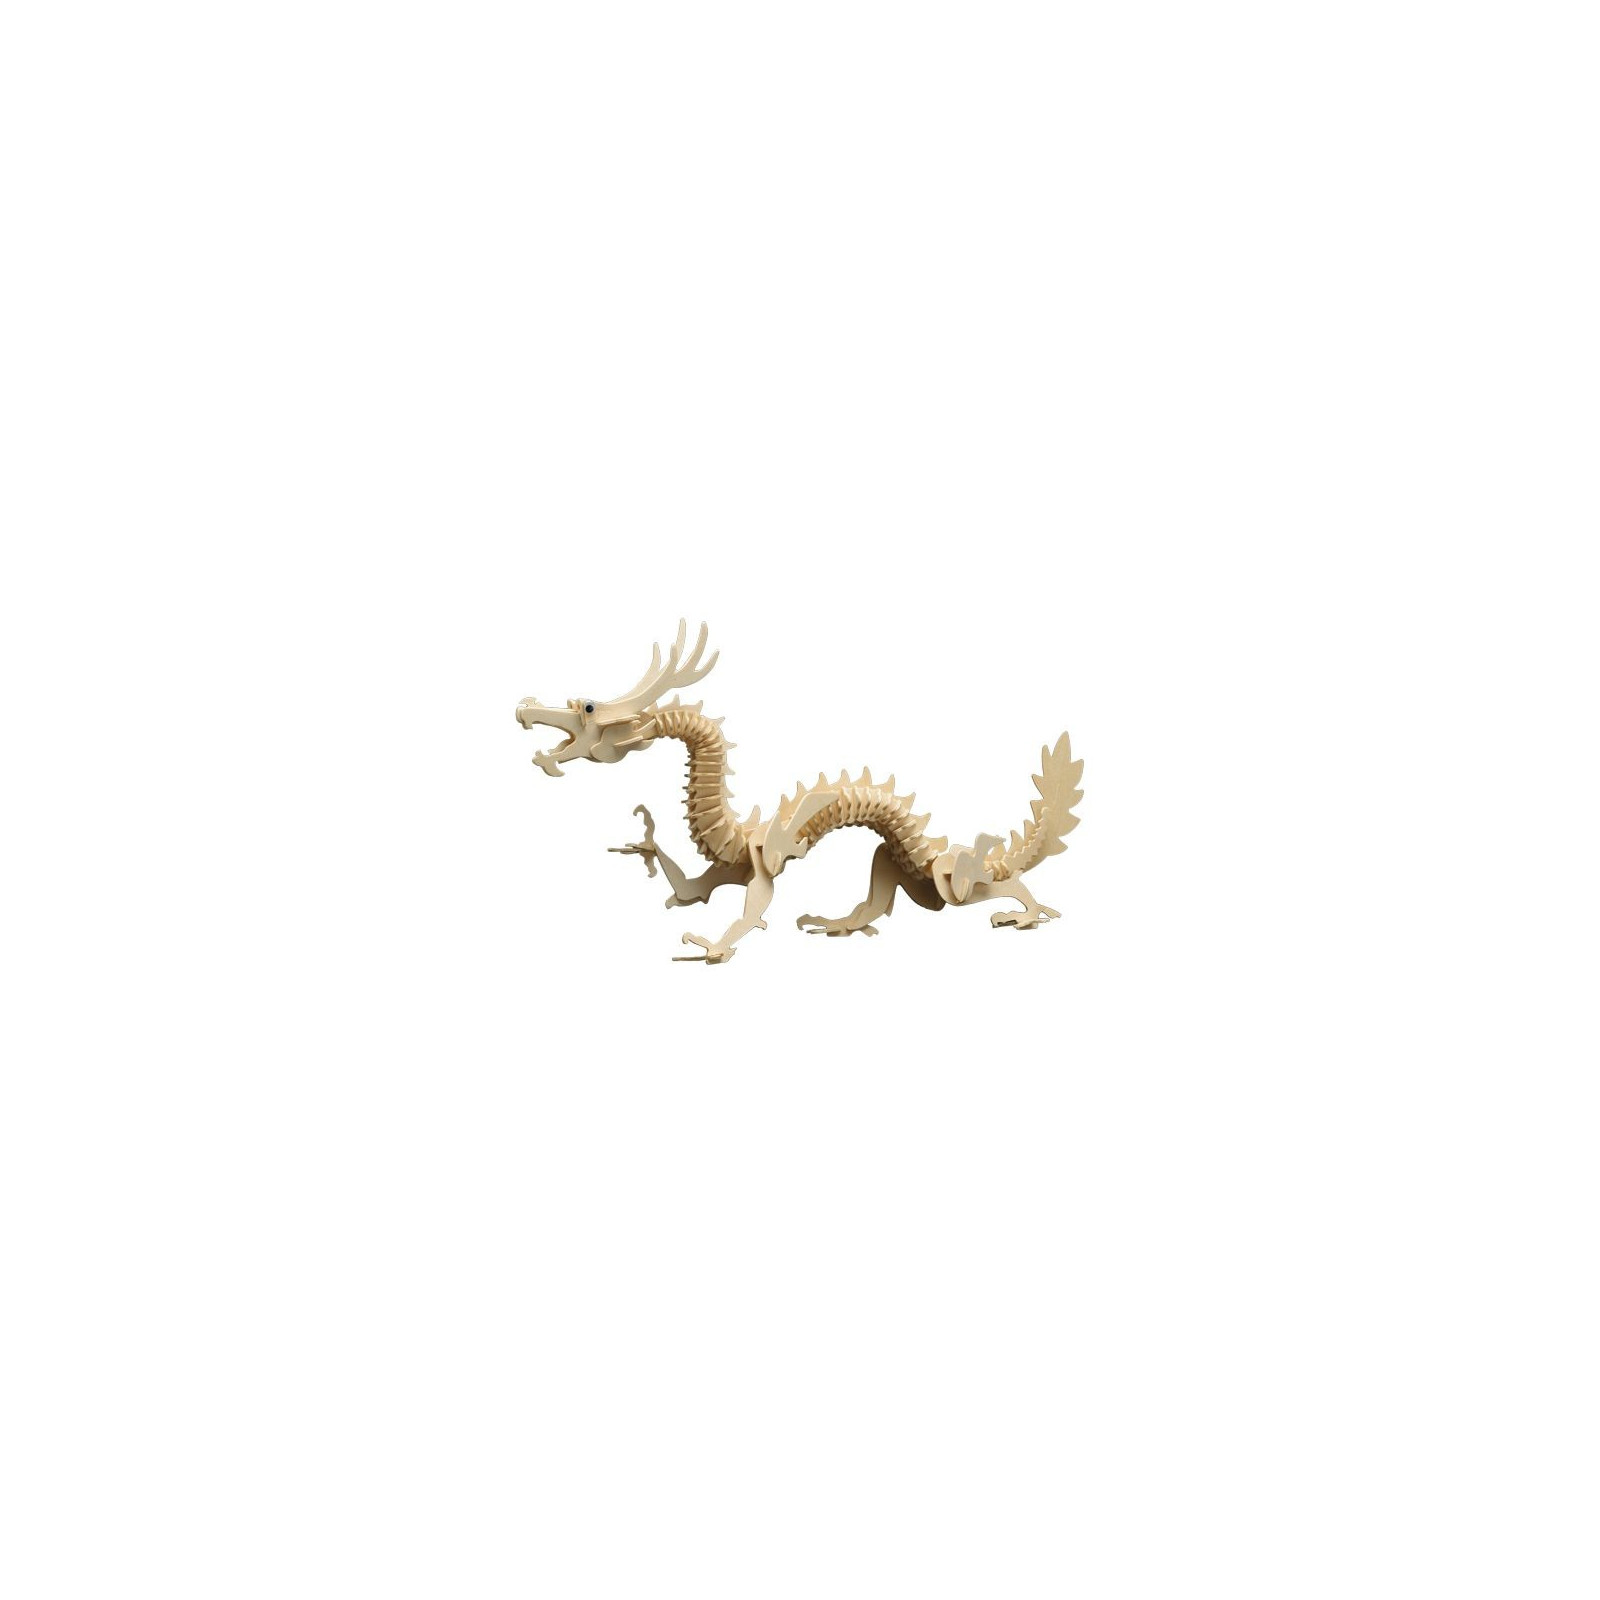 puzzle de recherche de mots avec un personnage de dragon mignon dans un  style traditionnel chinois, des lingots et des pièces d'or et un nuage  japonais dans un style de dessin animé